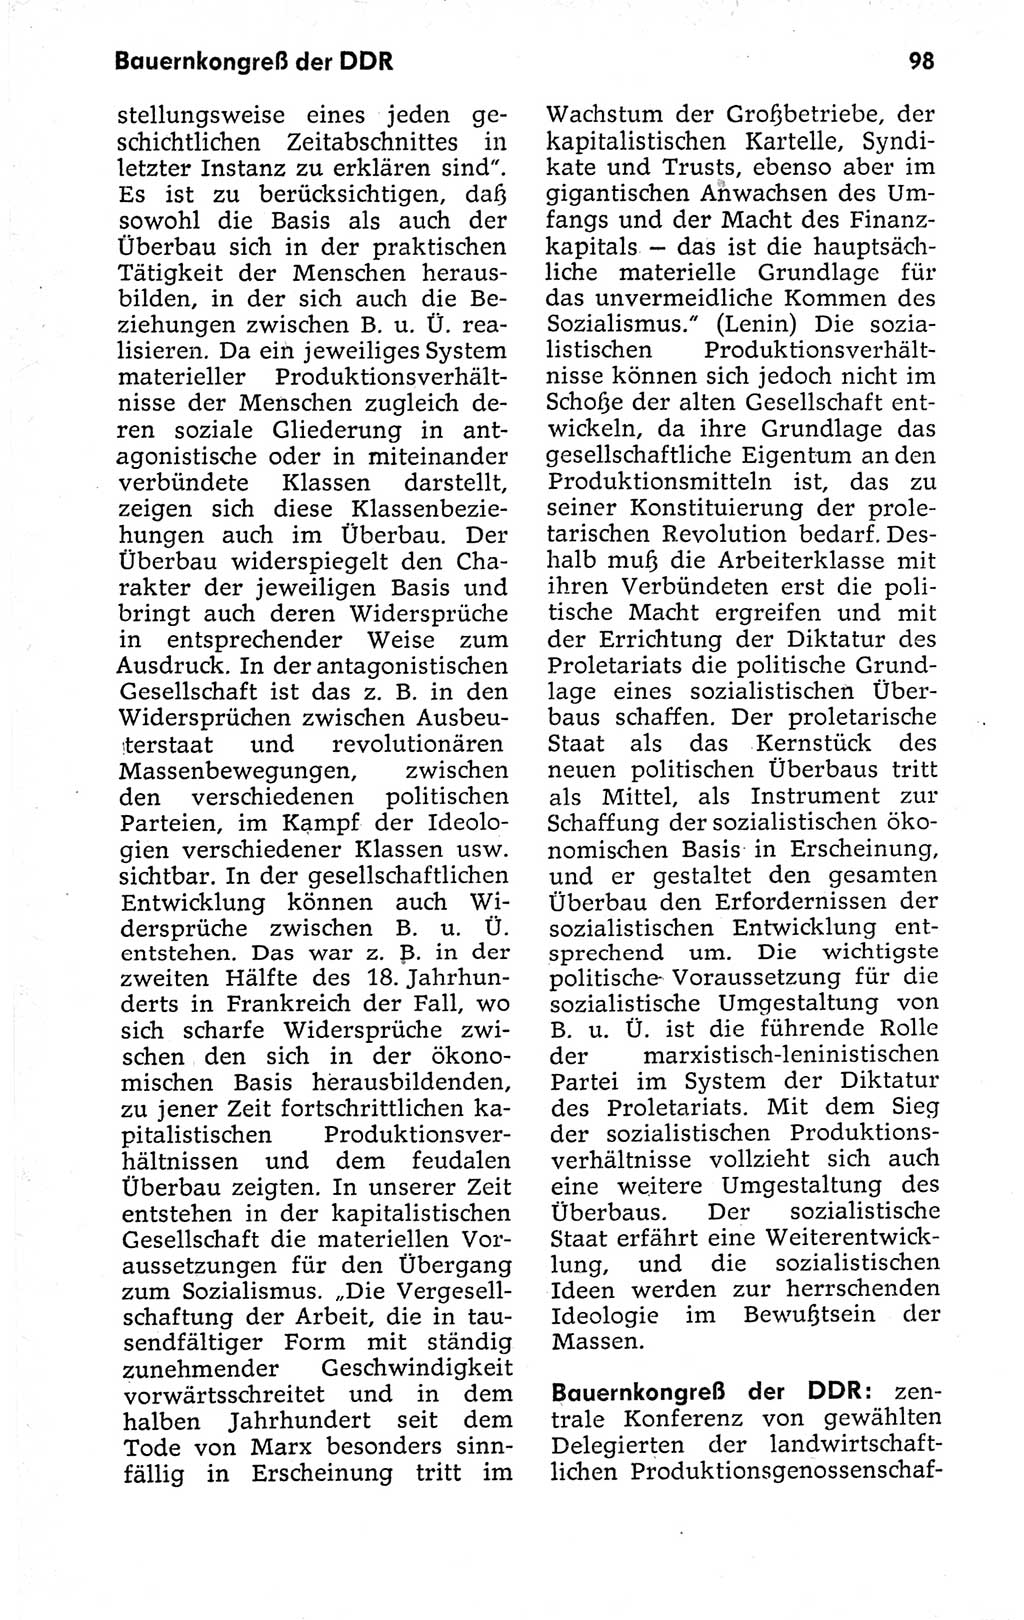 Kleines politisches Wörterbuch [Deutsche Demokratische Republik (DDR)] 1973, Seite 98 (Kl. pol. Wb. DDR 1973, S. 98)